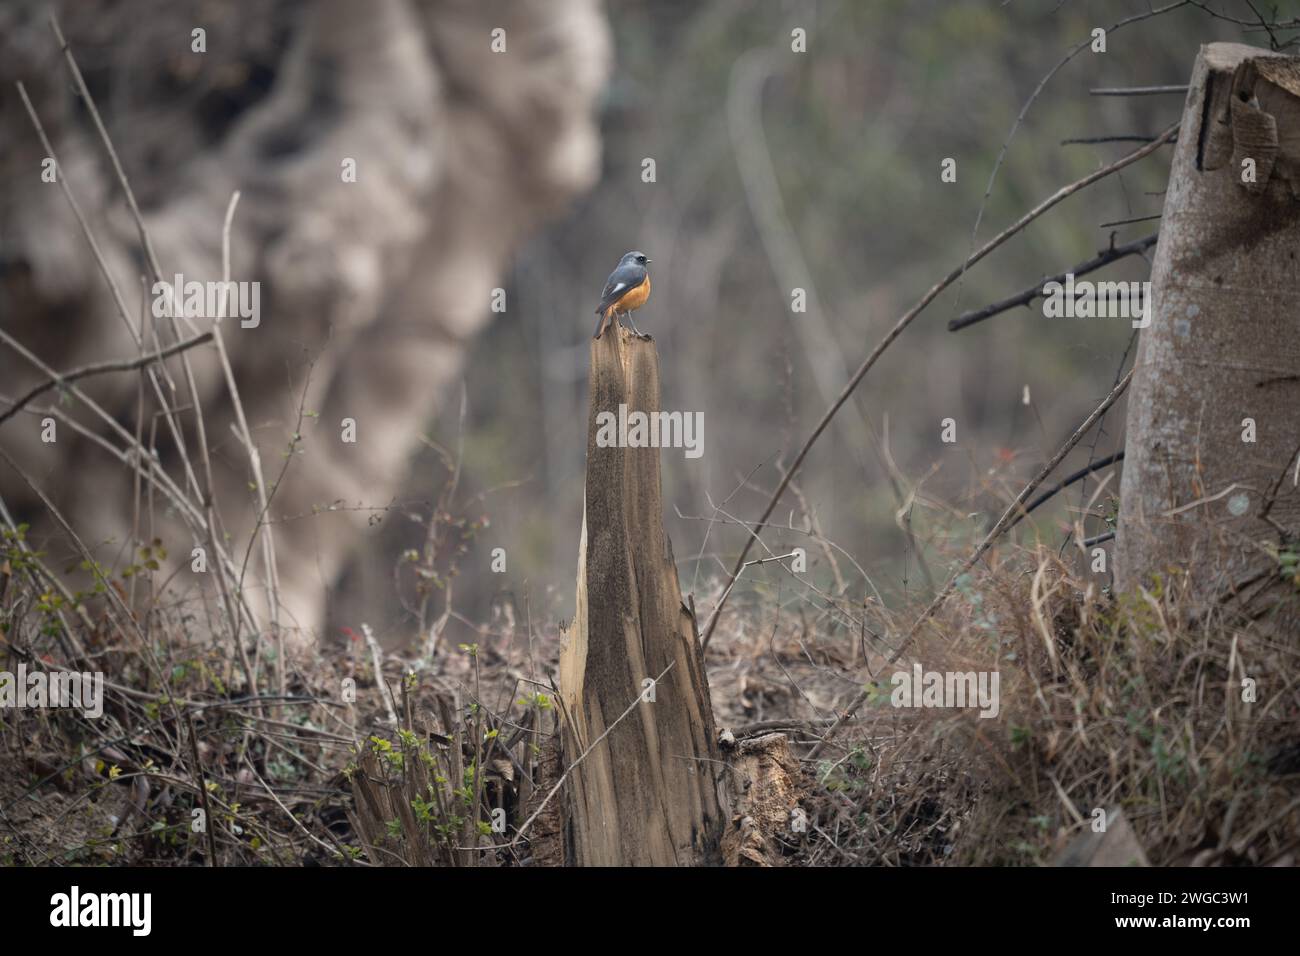 An environmental shot of a Hodgsons Redstart bird on a dead tree stump. Stock Photo